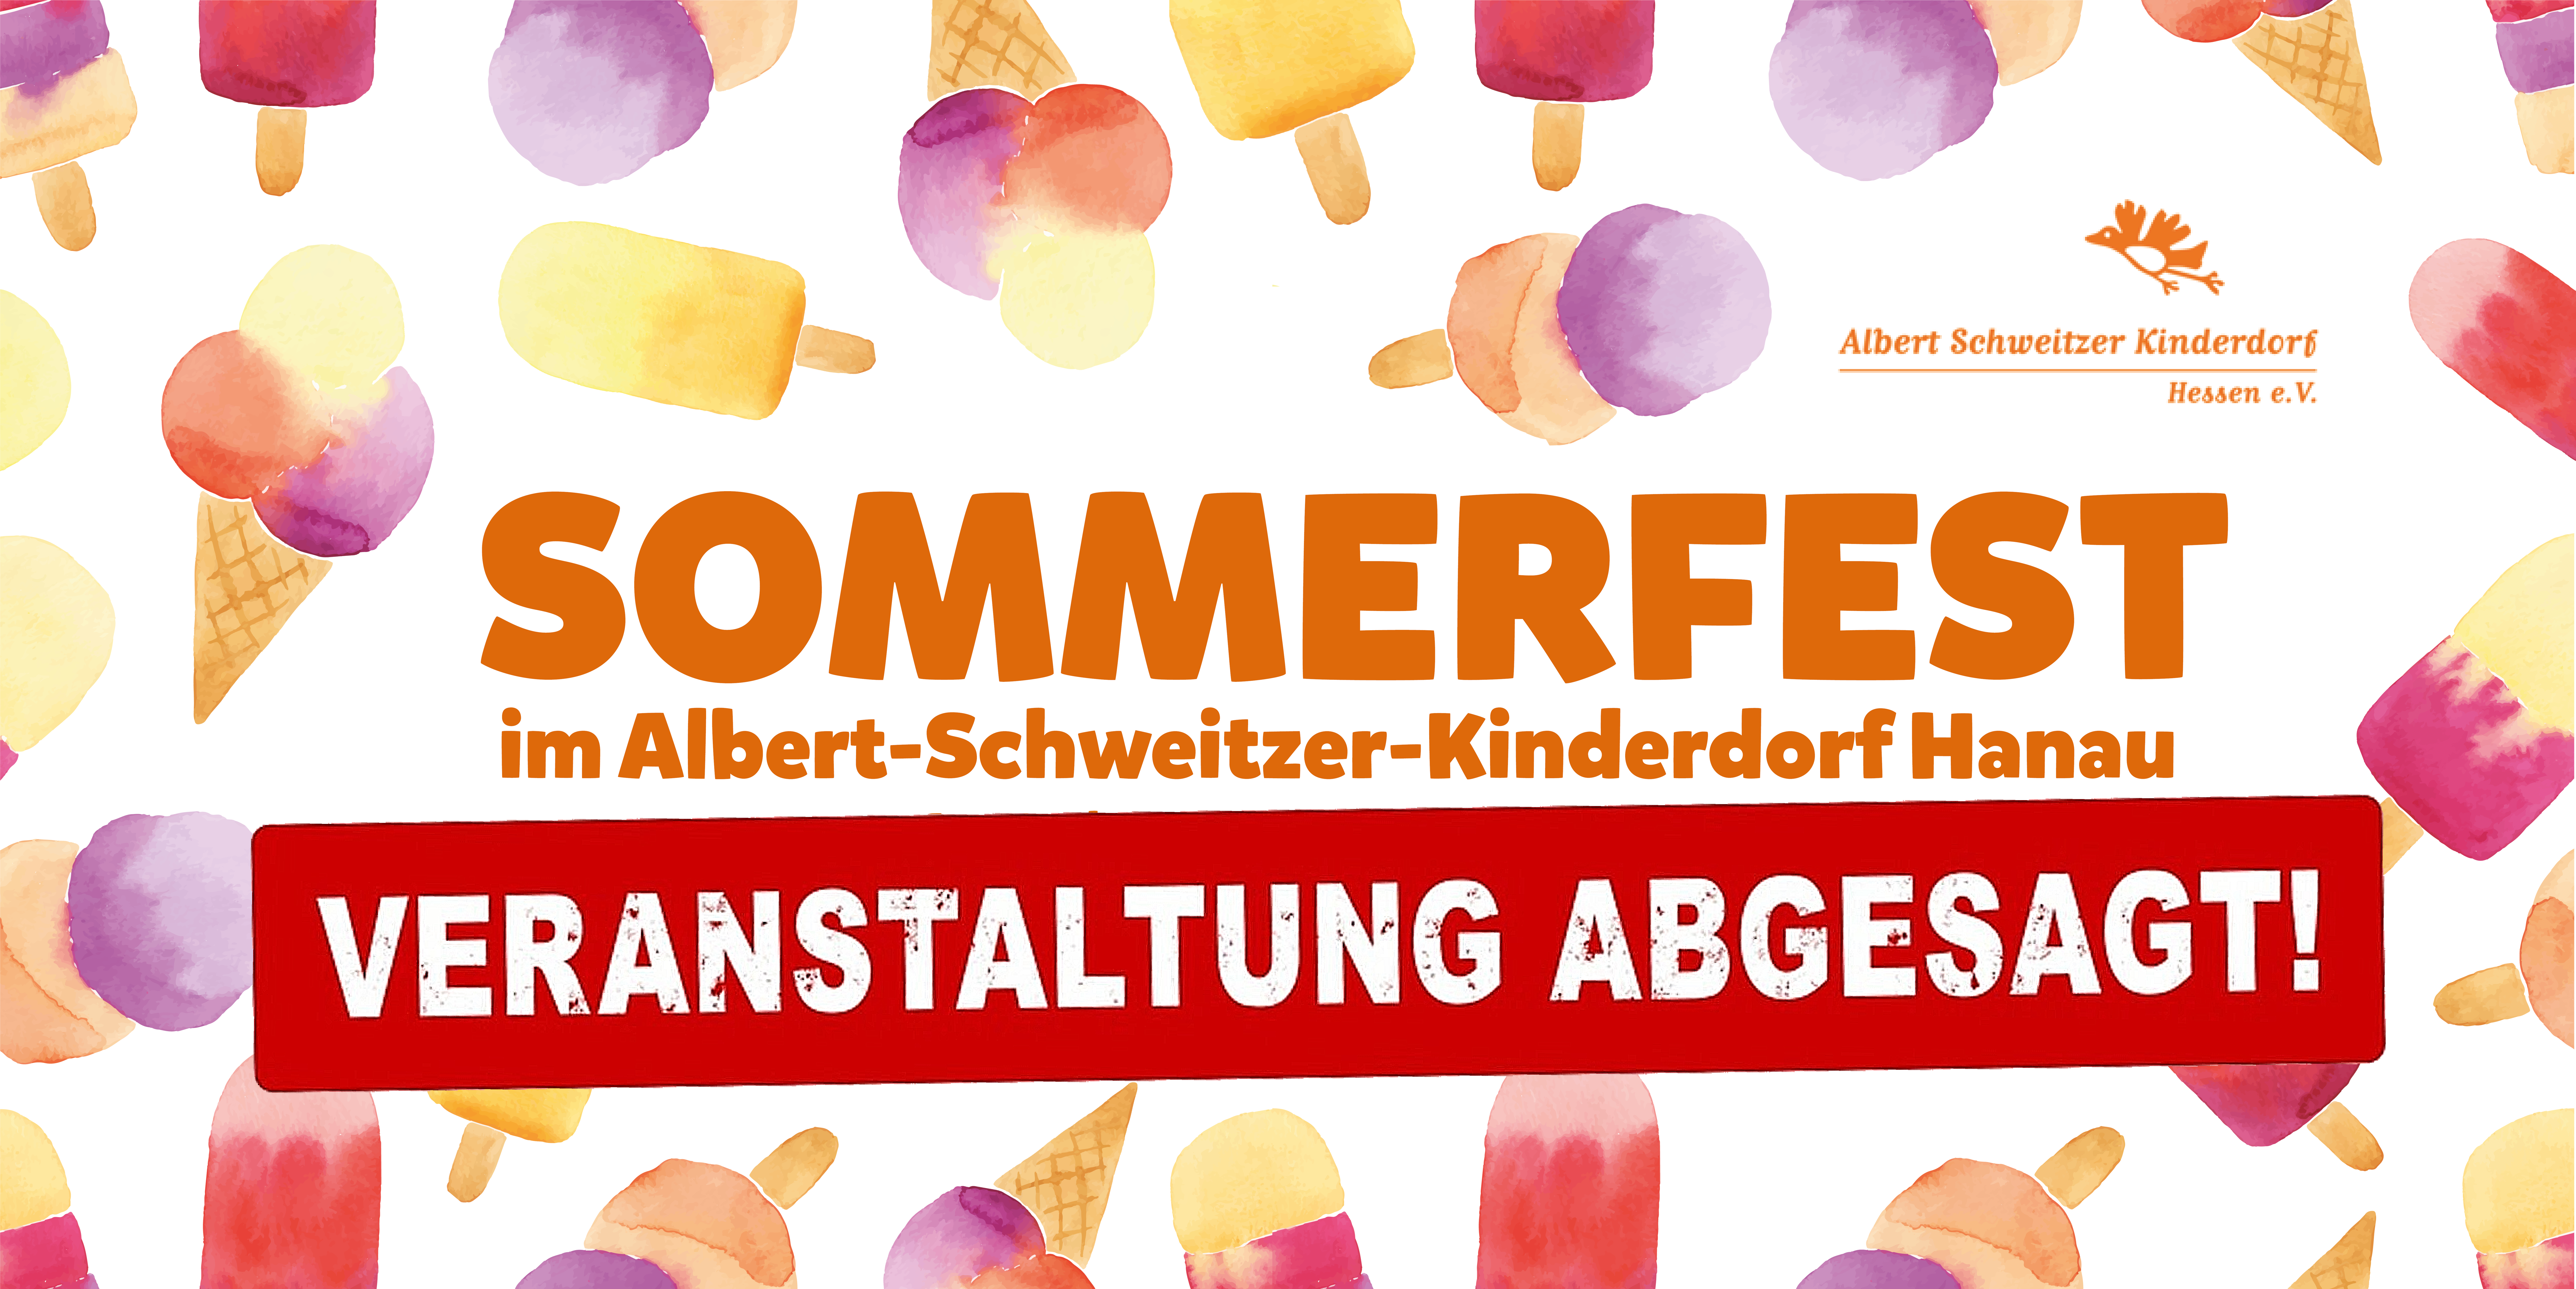 Sommerfest im Albert-Schweitzer-Kinderdorf Hanau abgesagt